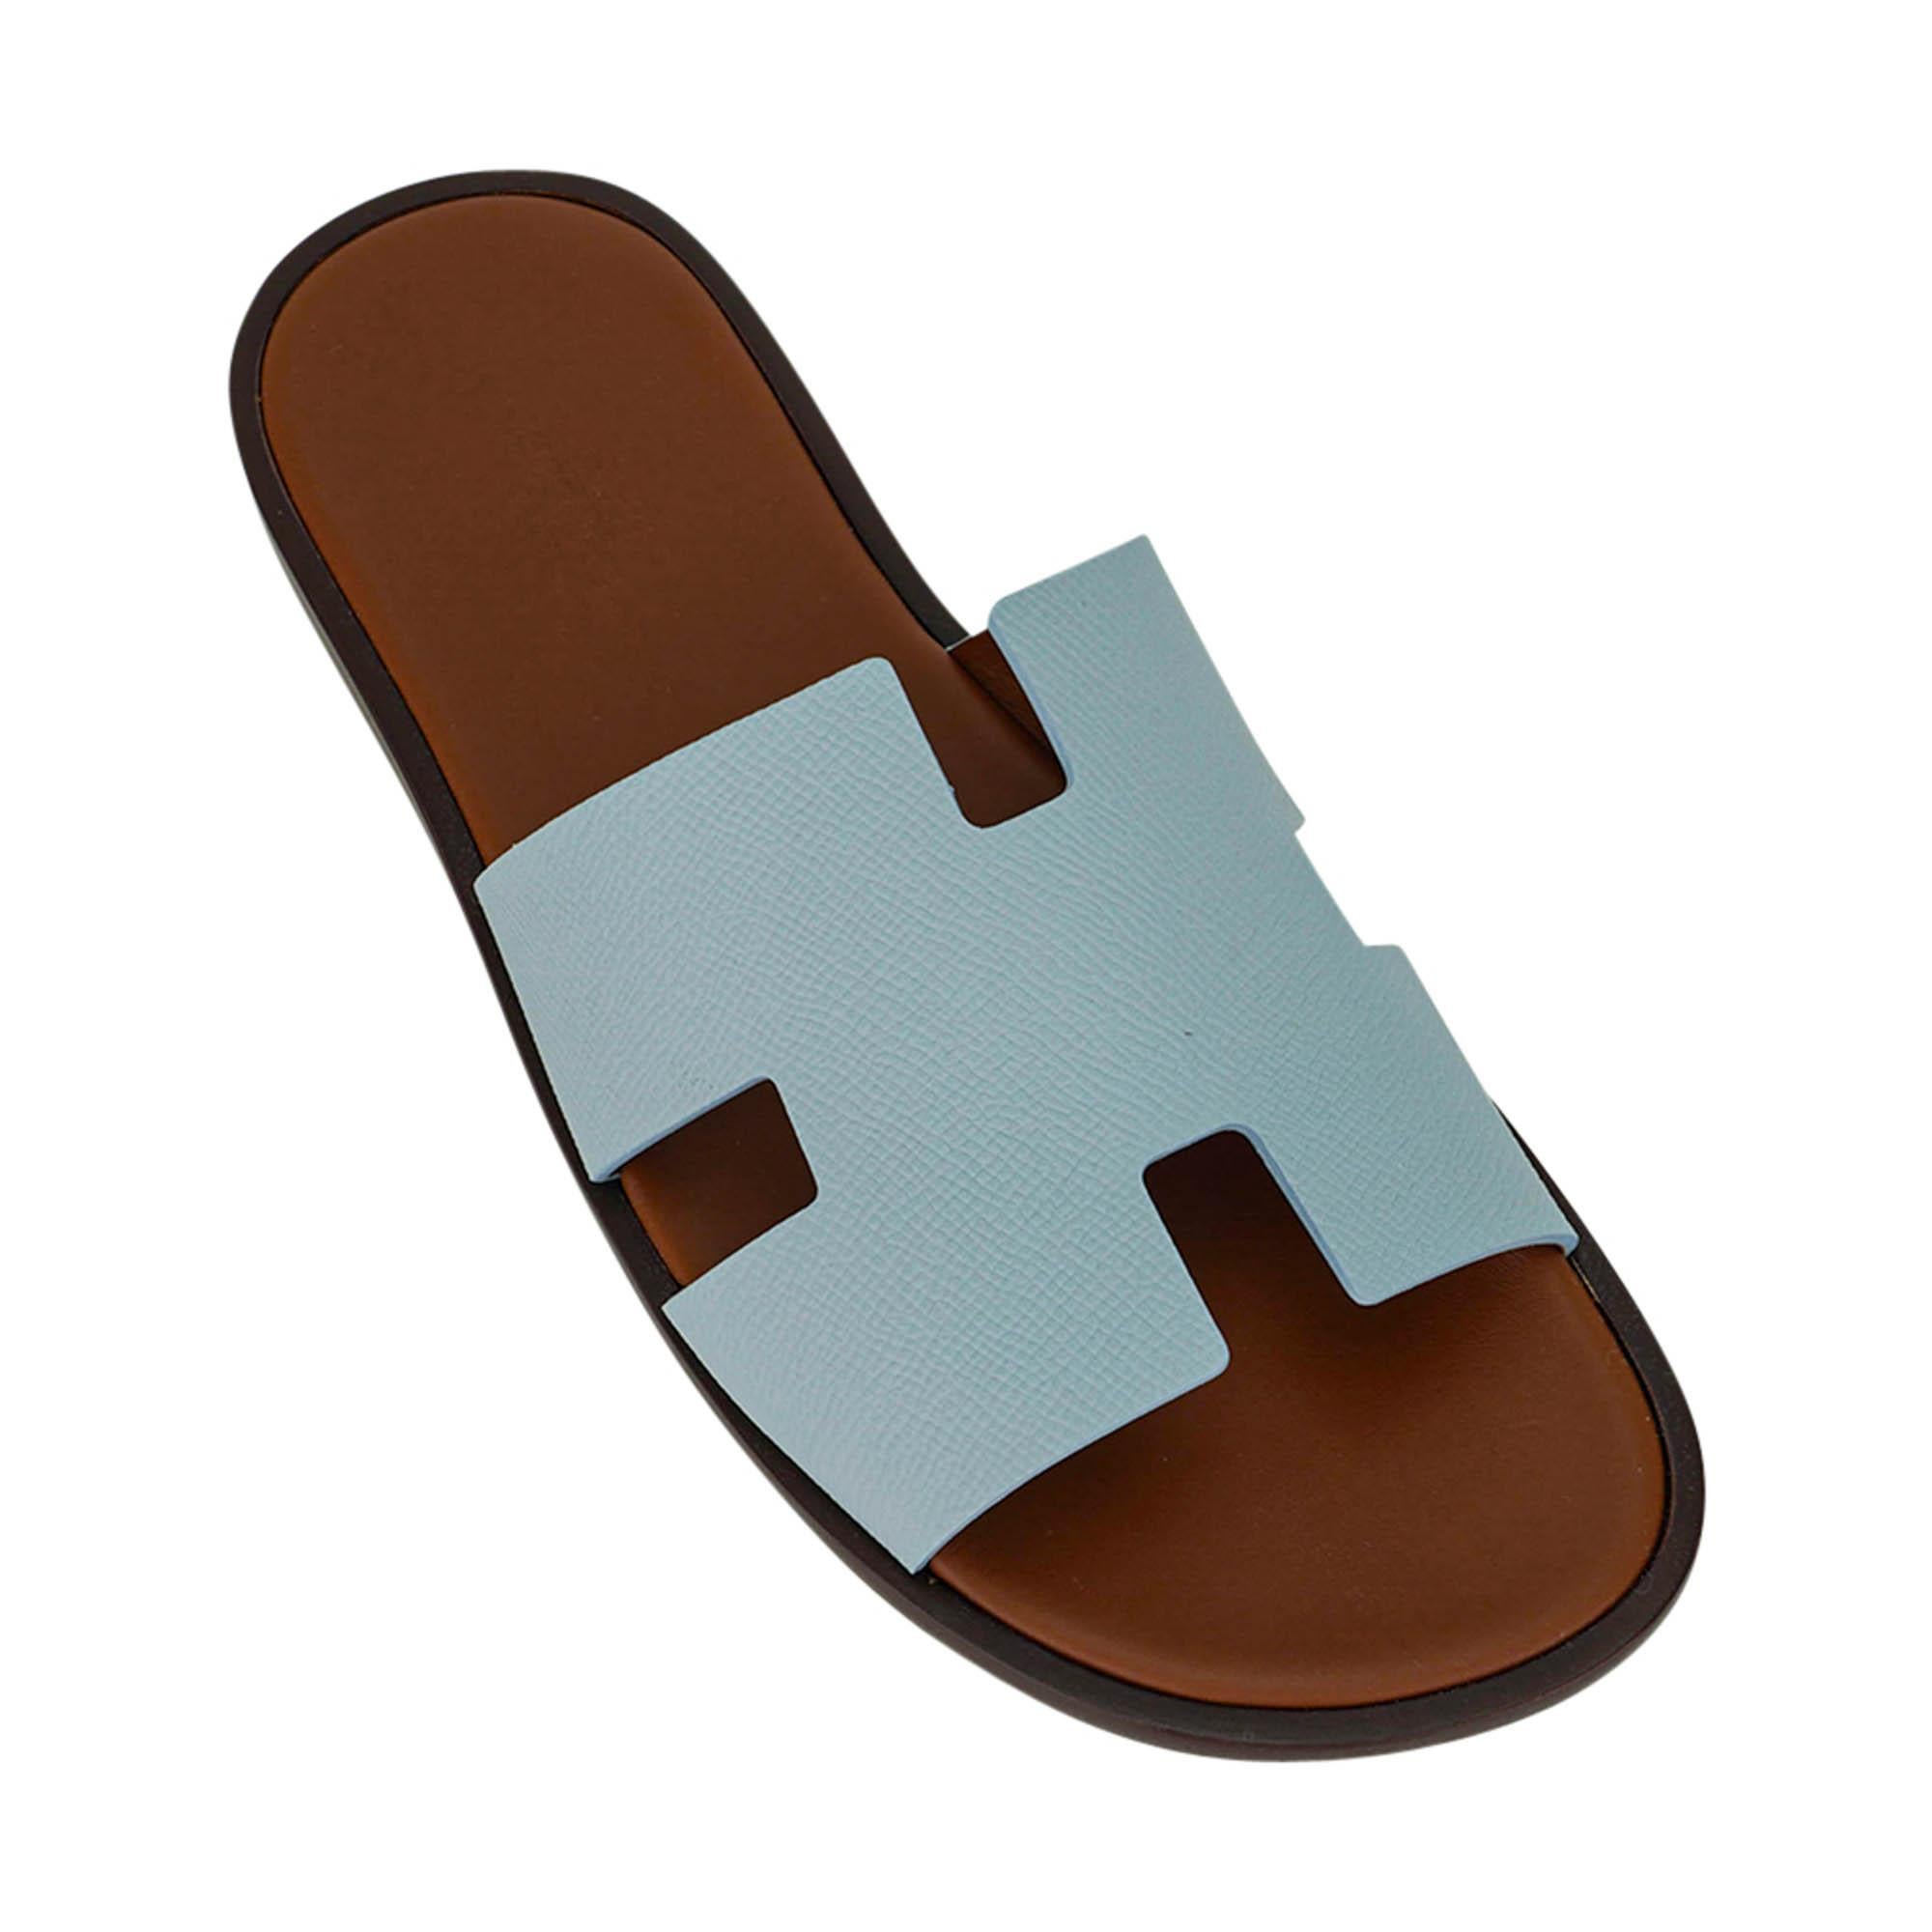 Mightychic vous propose une paire de sandales Izmir pour homme de la marque Hermes en Vert d'Eau avec une semelle intérieure Naturel doublée de cuir.
L'emblématique découpe en H sur le dessus du pied en cuir Icone.
Des couleurs sophistiquées dans